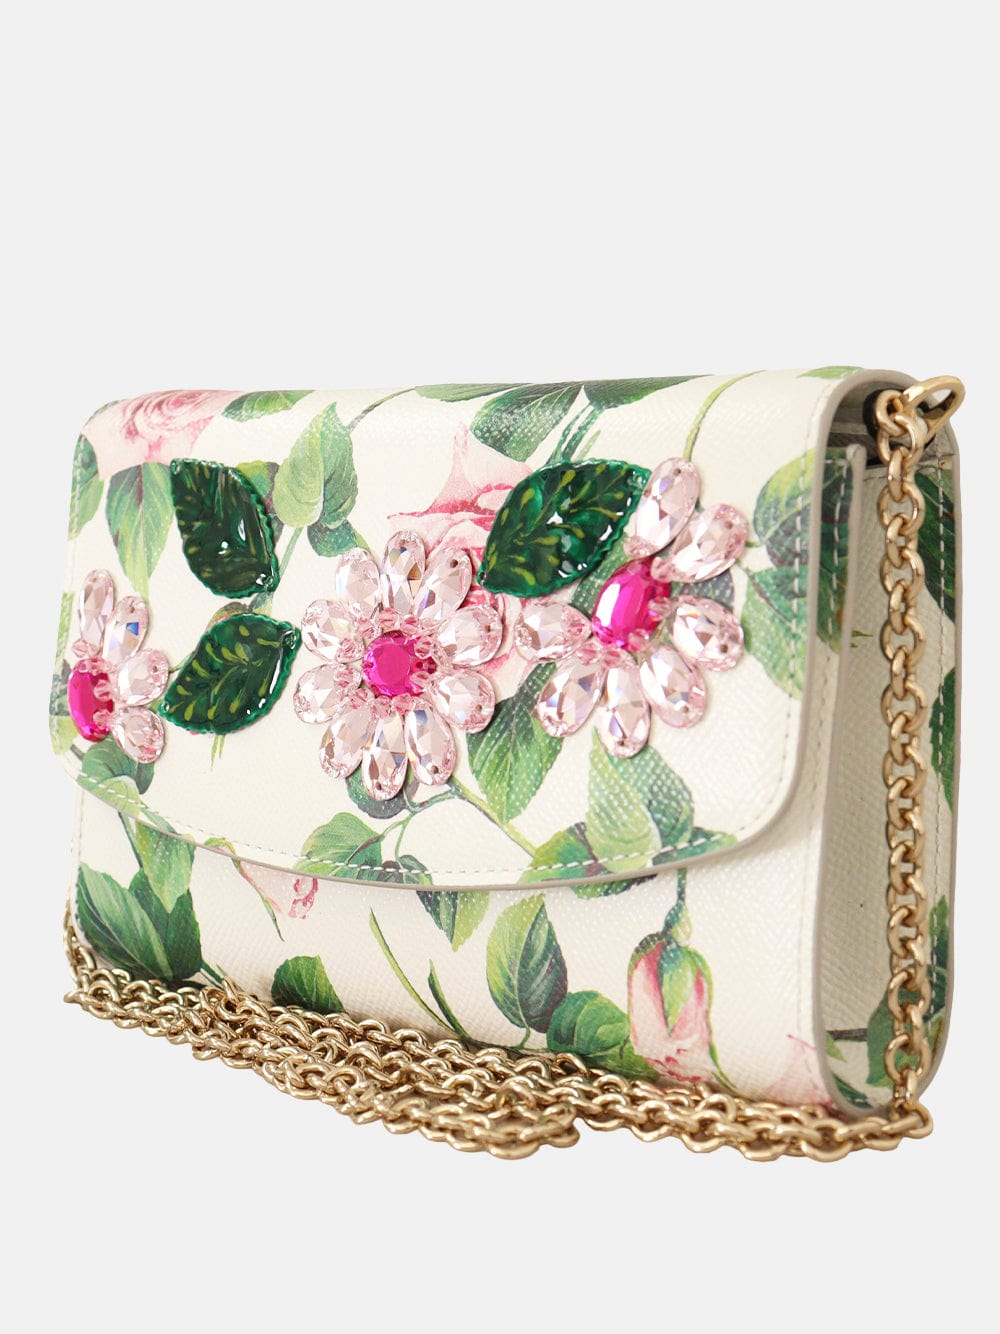 Dolce & Gabbana Rose-Print Embellished Clutch Bag